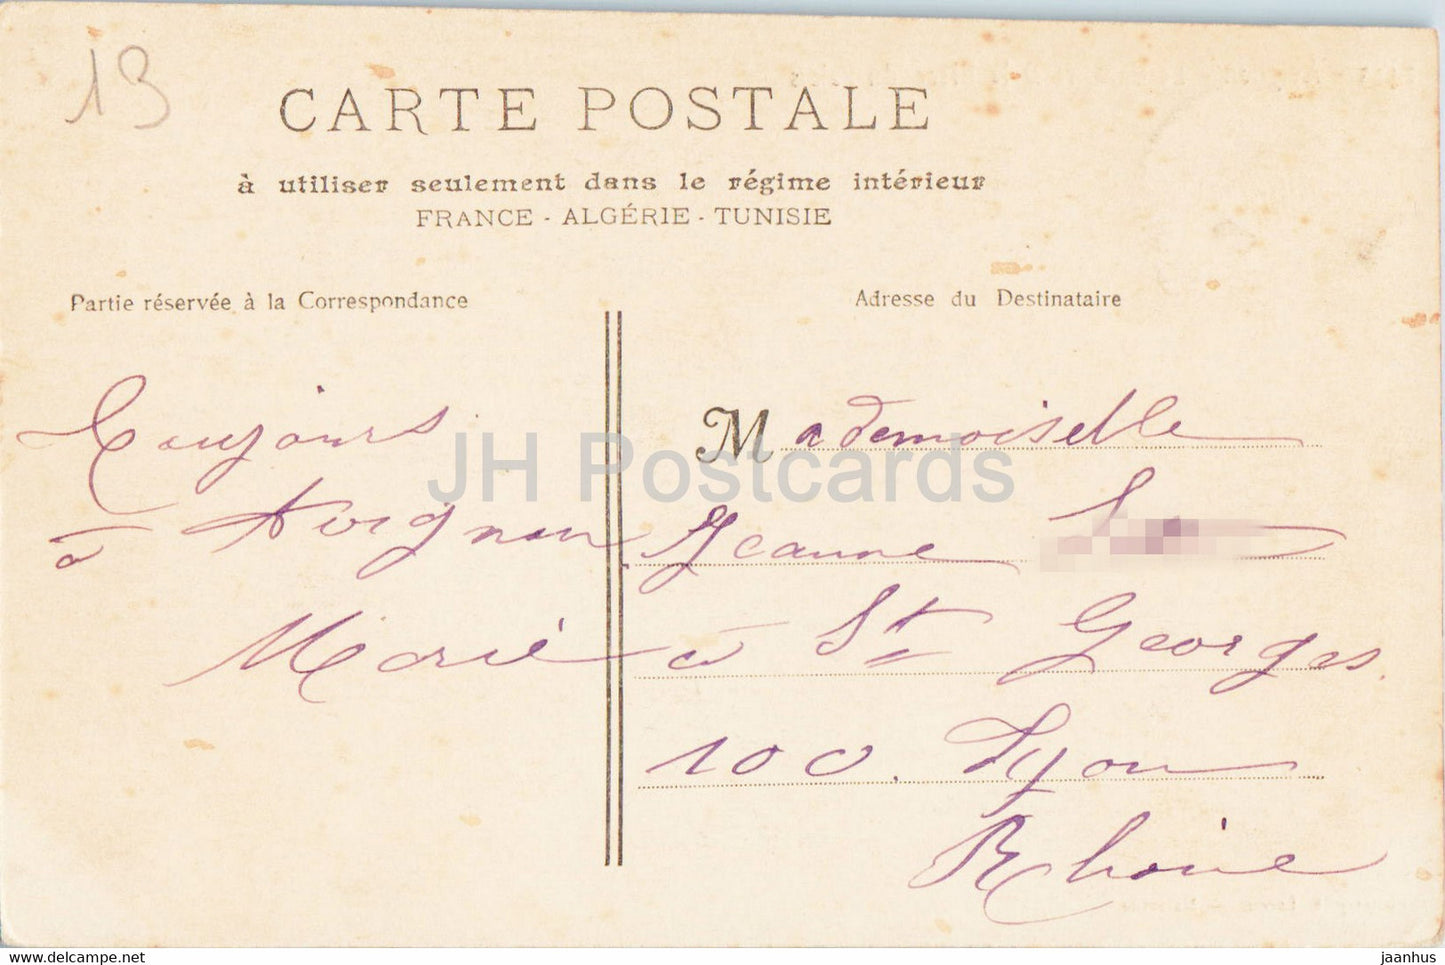 Avignon - Le Calvaire et la Place du Palais - carte postale ancienne - 1905 - France - oblitéré